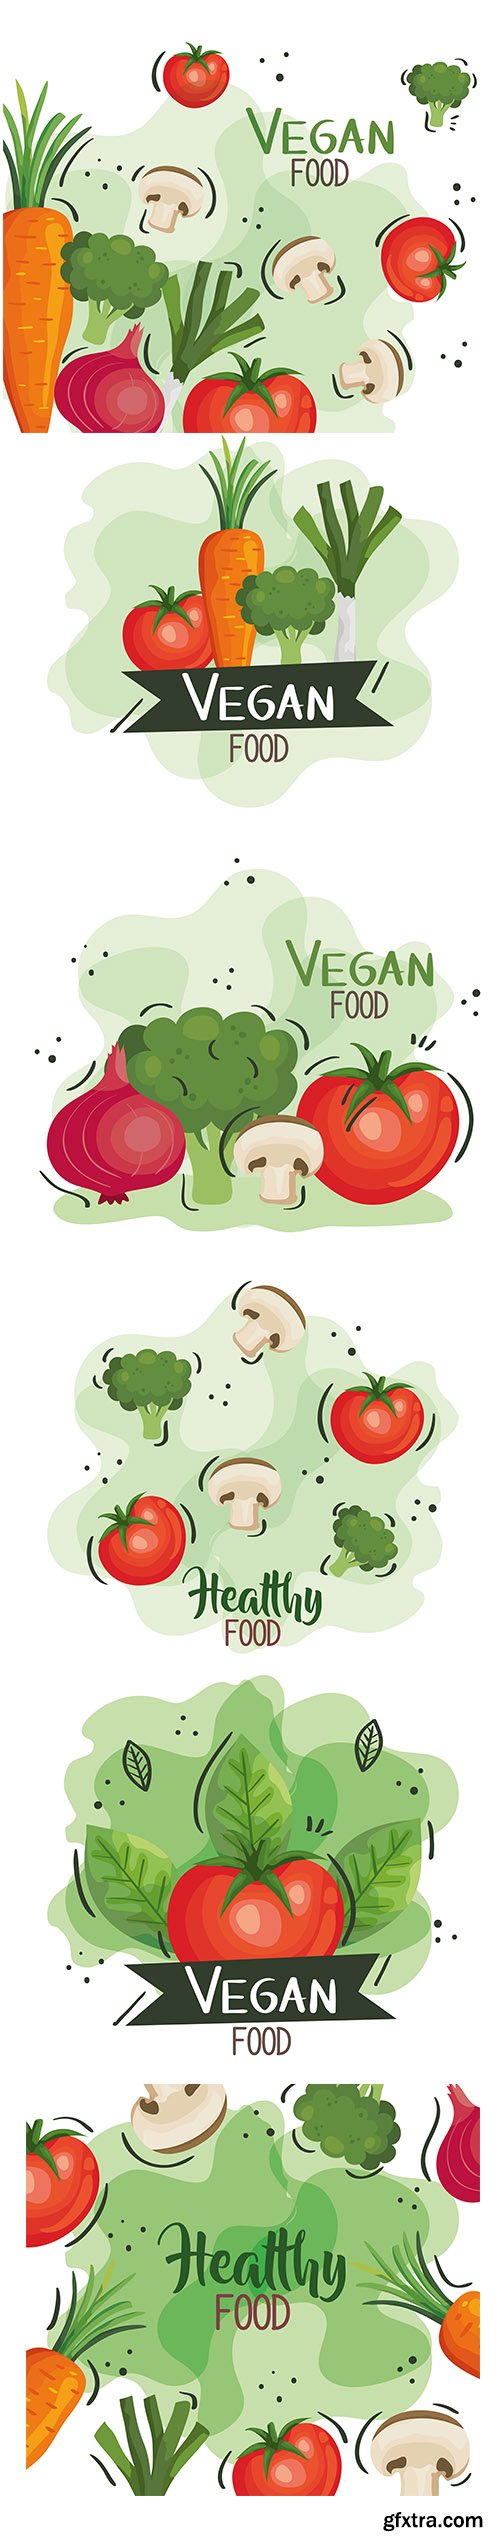 Vegan Food Poster with Vegetables Set